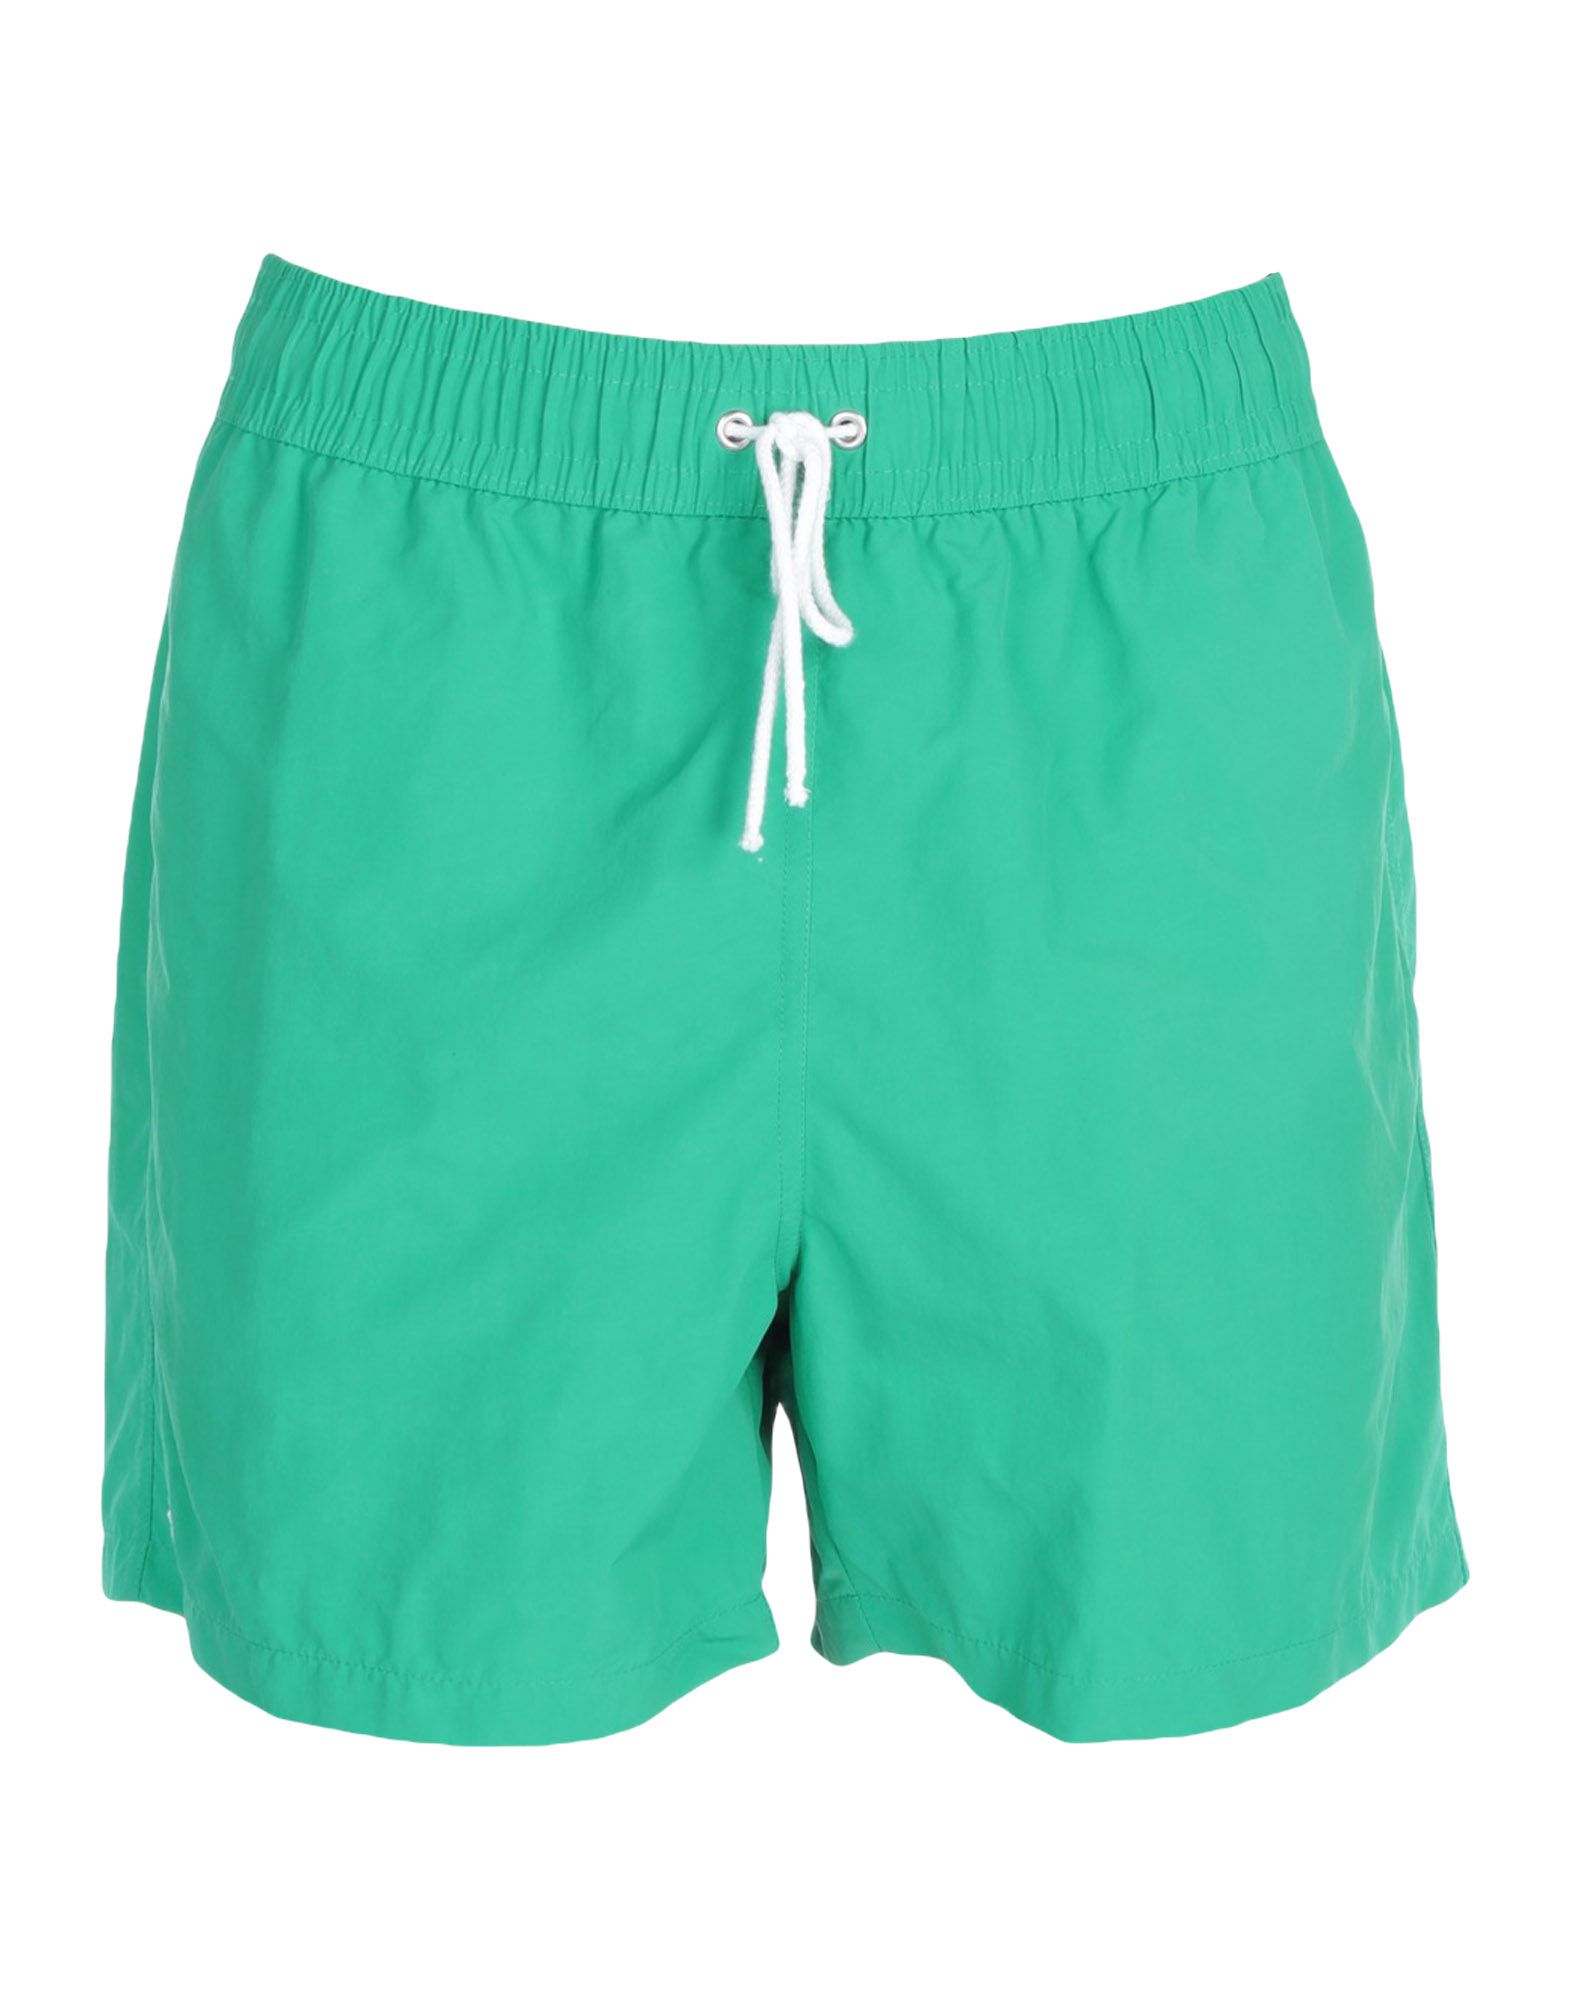 Шорты лакост. Шорты Lacoste мужские Green-132. Плавательные шорты Lacoste мужские. Шорты лакост мужские зеленые.